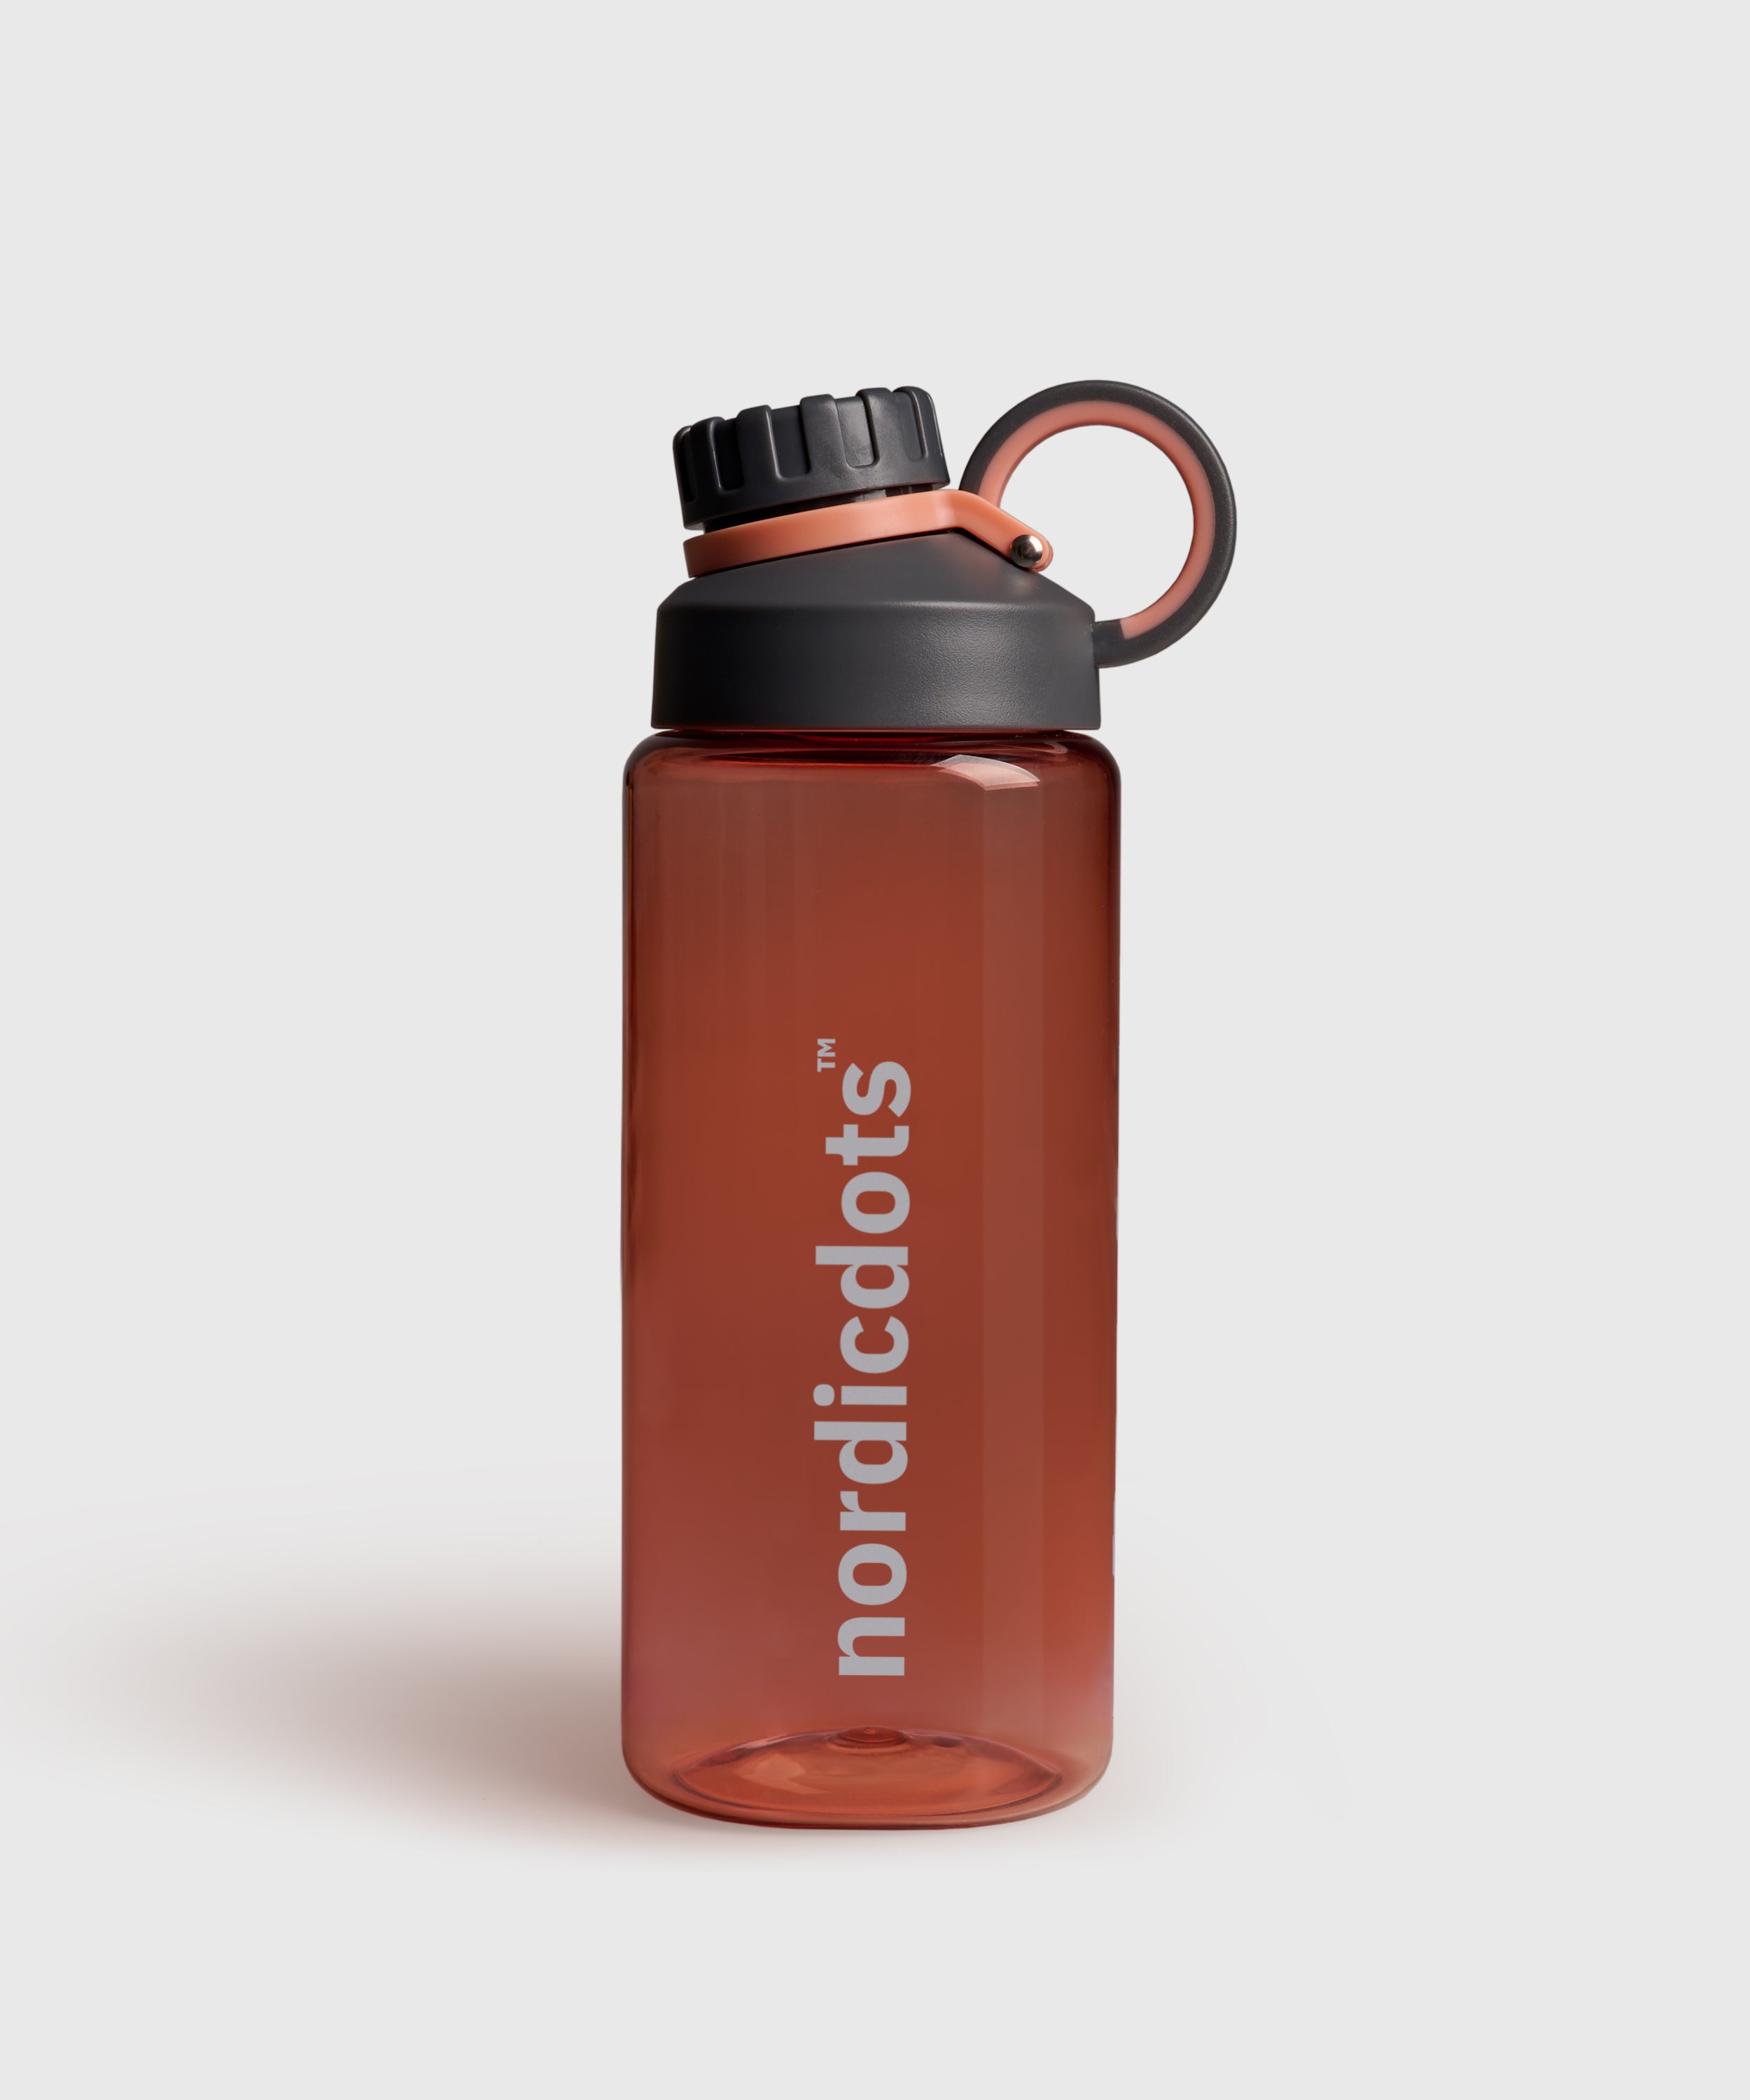 https://nordicdots.com/cdn/shop/products/shake-me-bottle-melon-water-shaker-nordicdots-nordicdots.com-1.jpg?v=1679621462&width=2500